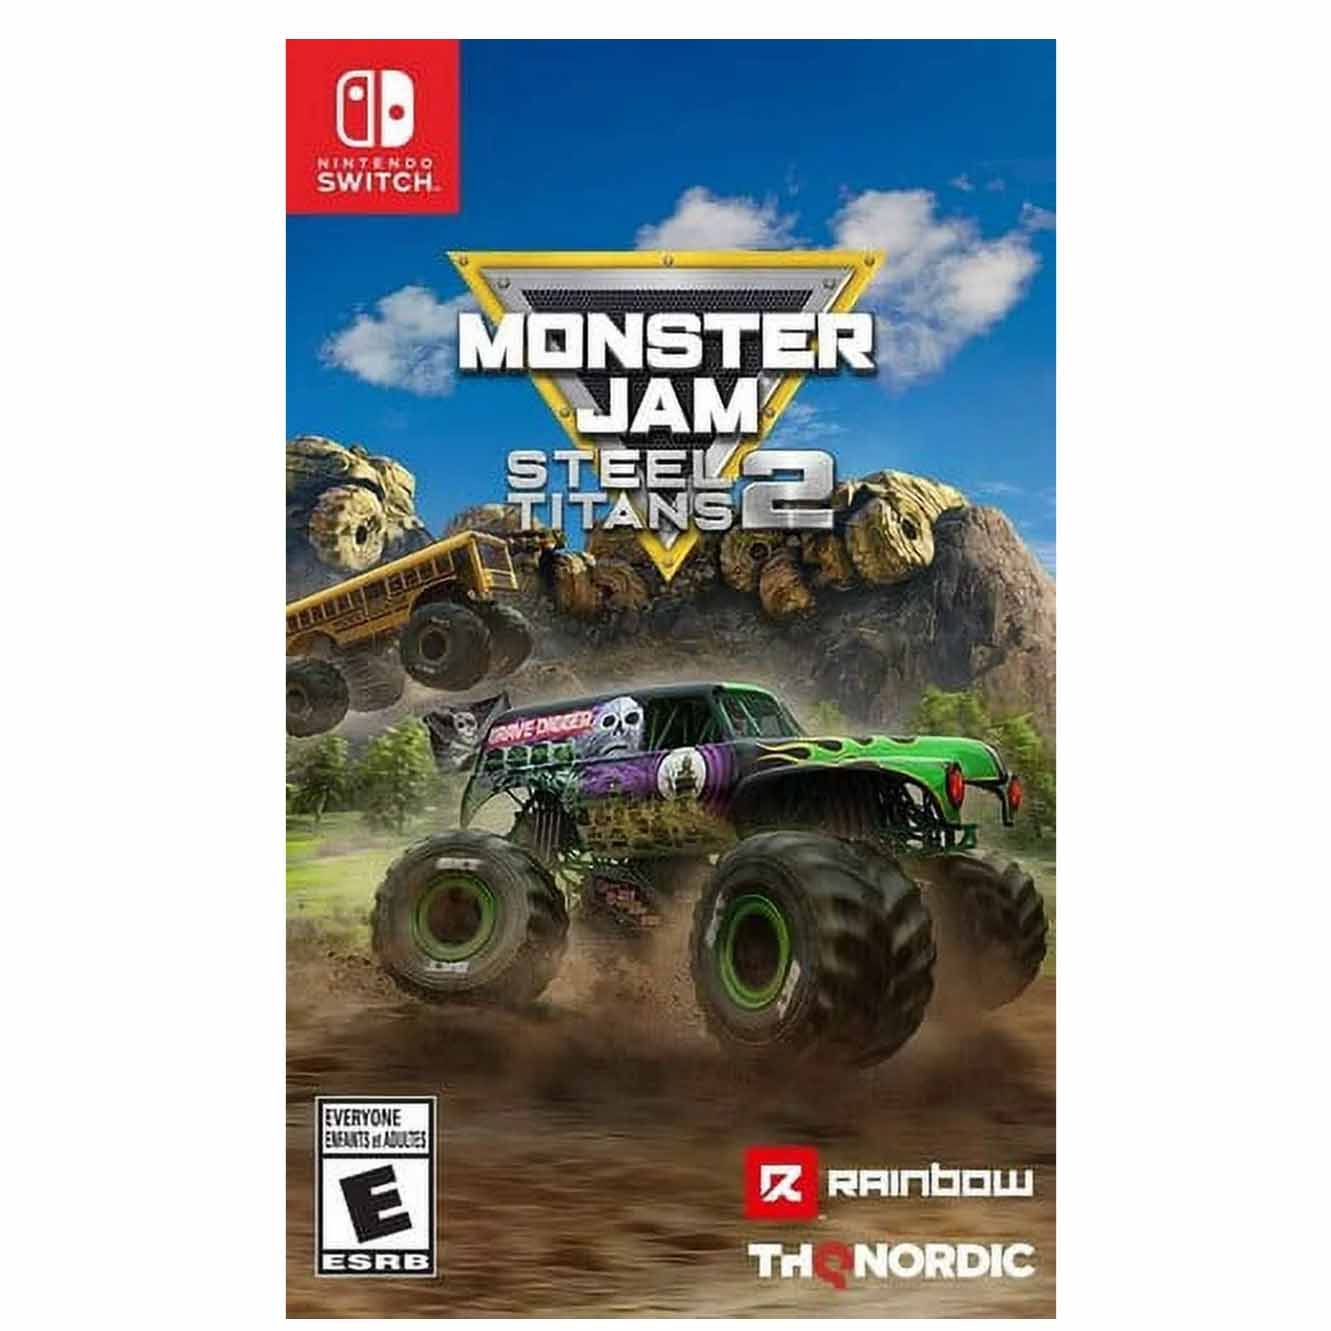 Monster Jam Steel Titans 2 game cover